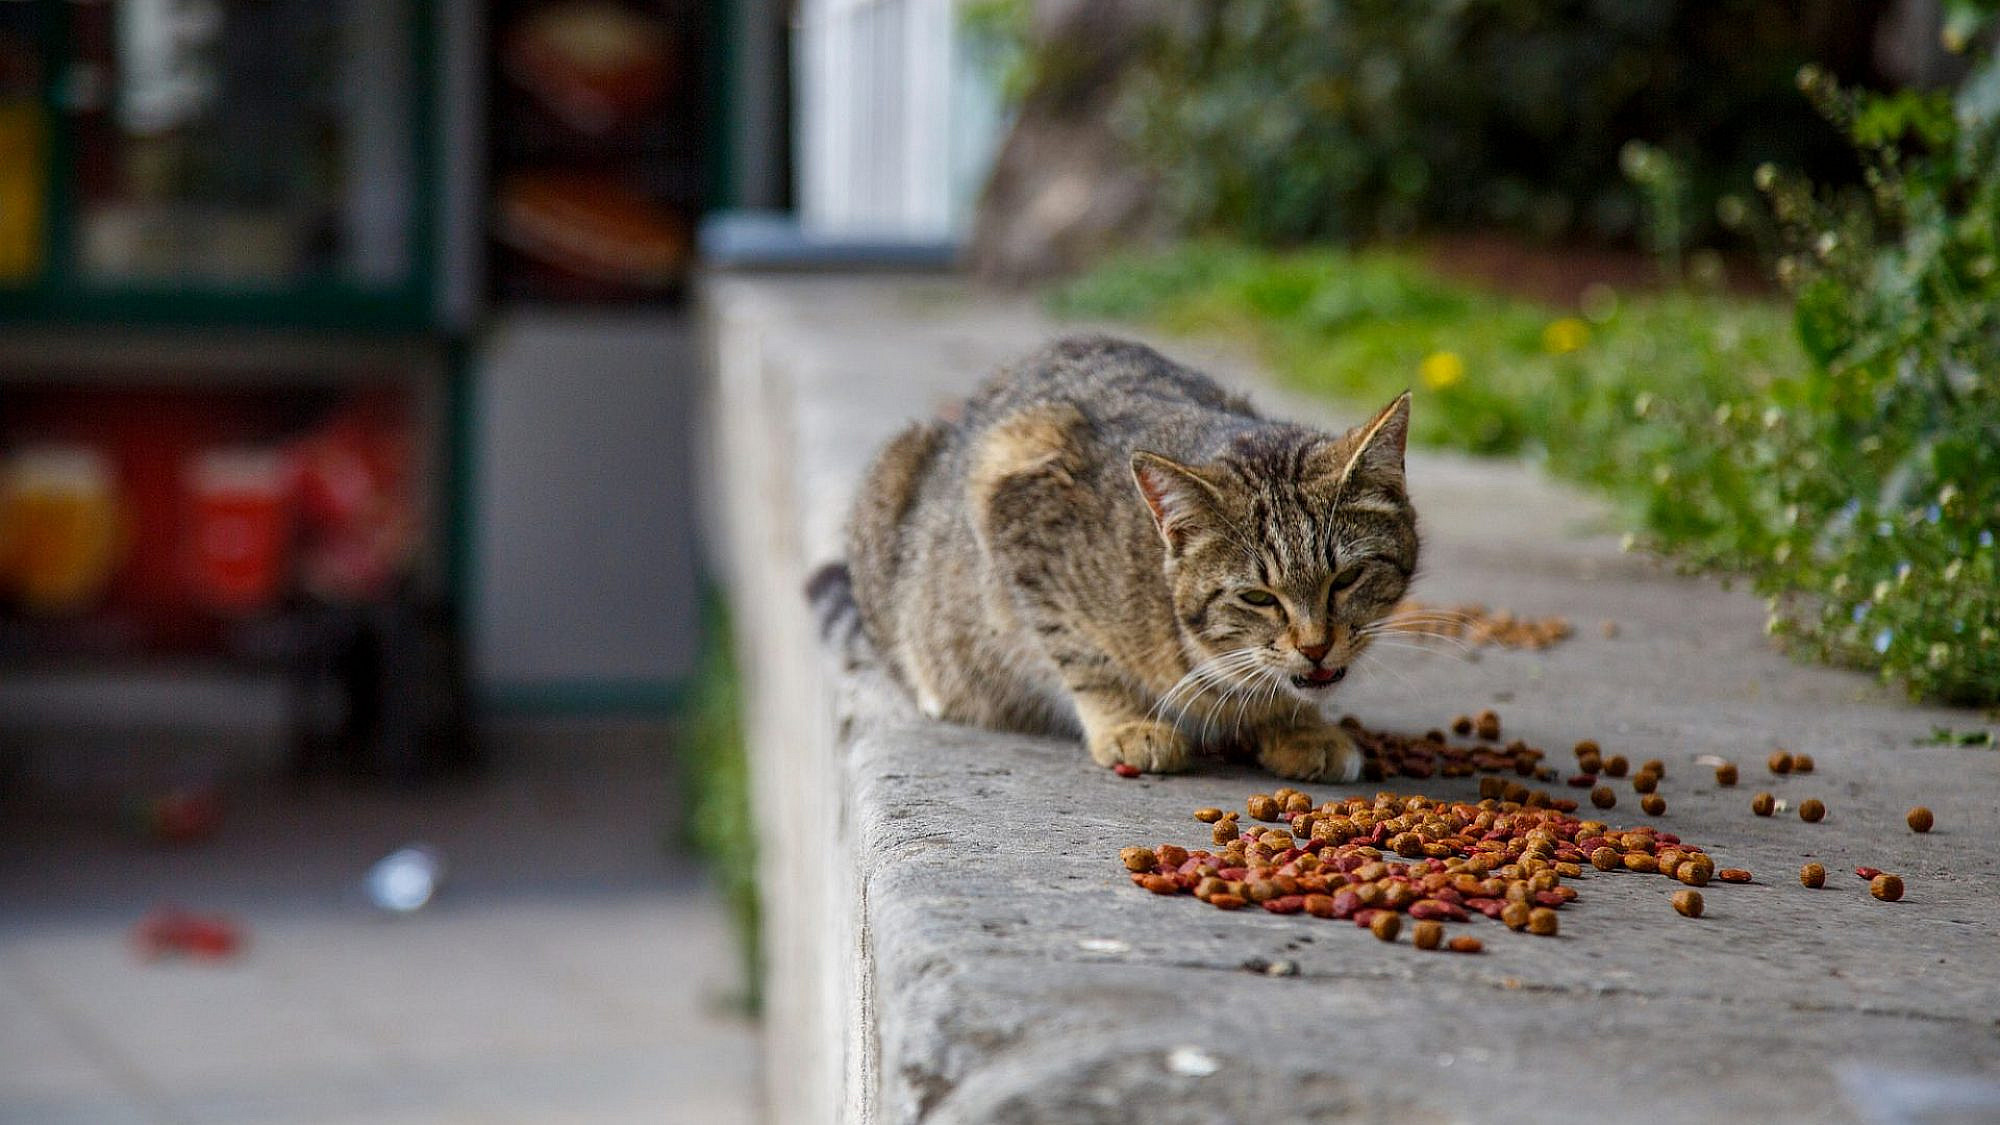 ככה מאכילים חתולים? מגיעה להם לכל הפחות פינת האכלה מסודרת, אם לא לשלוט בעולם (צילום: שאטרסטוק)